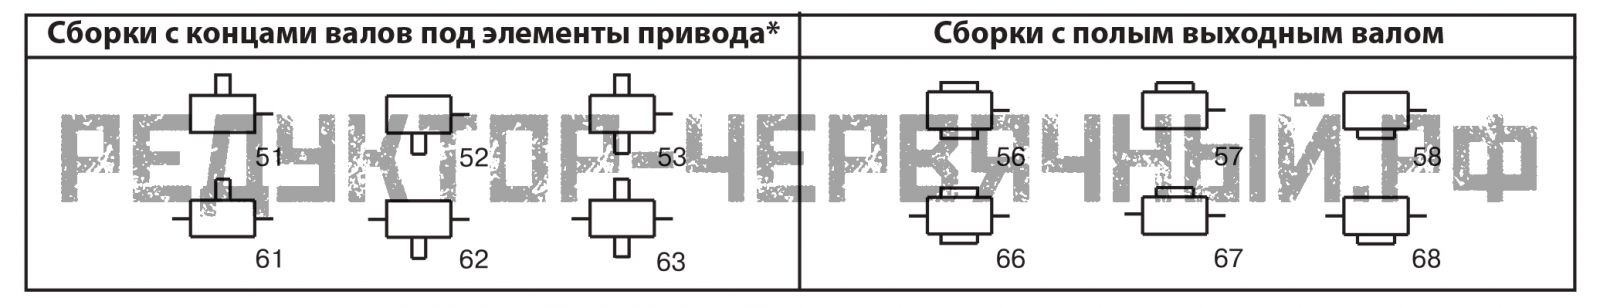 Варианты сборки редуктора 6Ч - 125